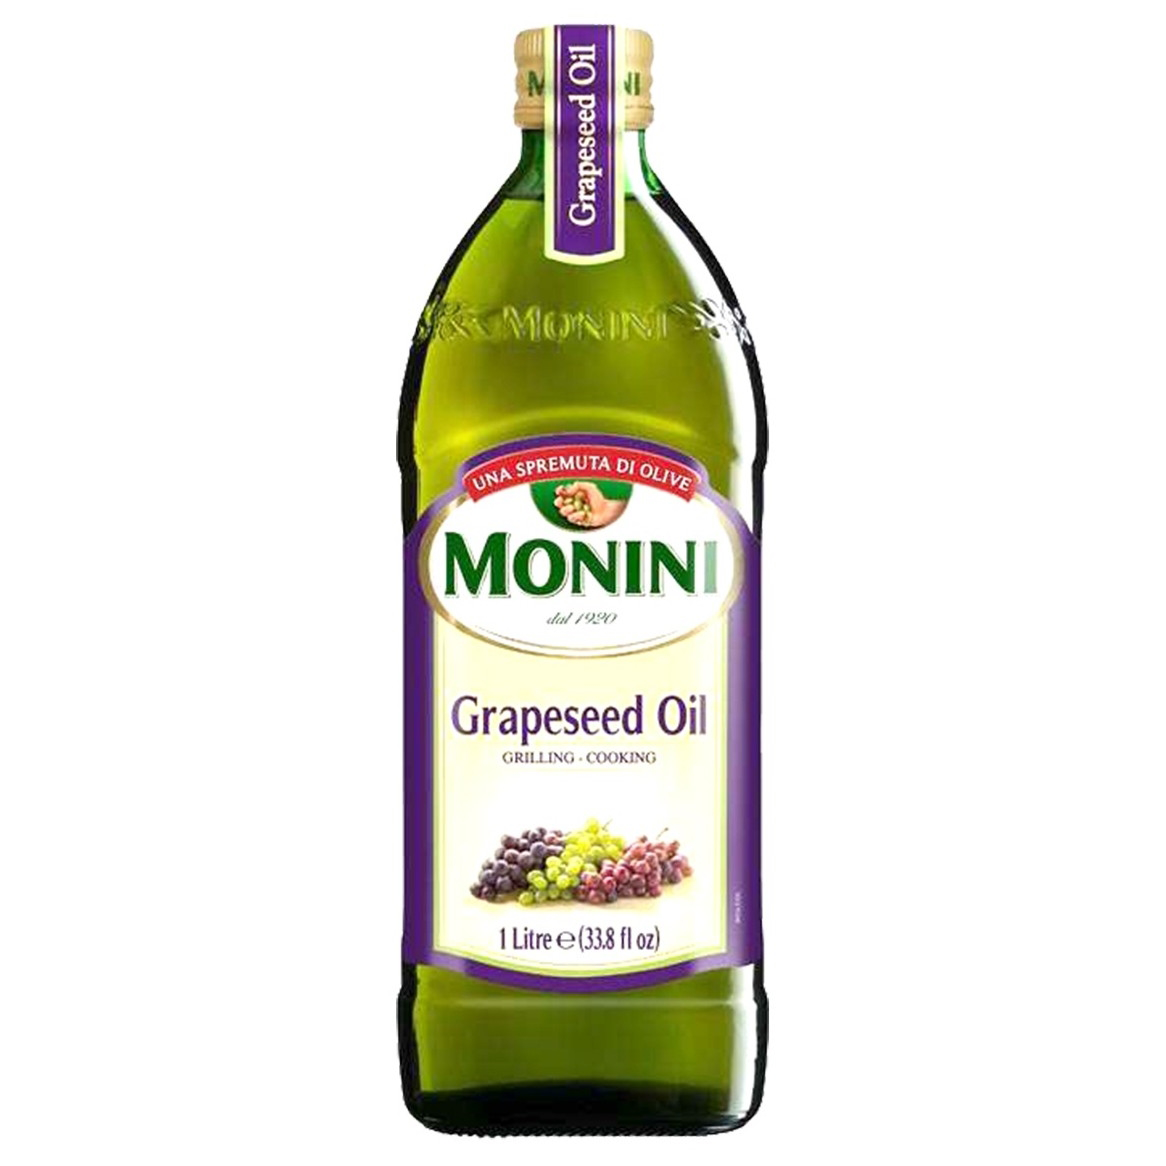 Monini意大利葡萄籽油